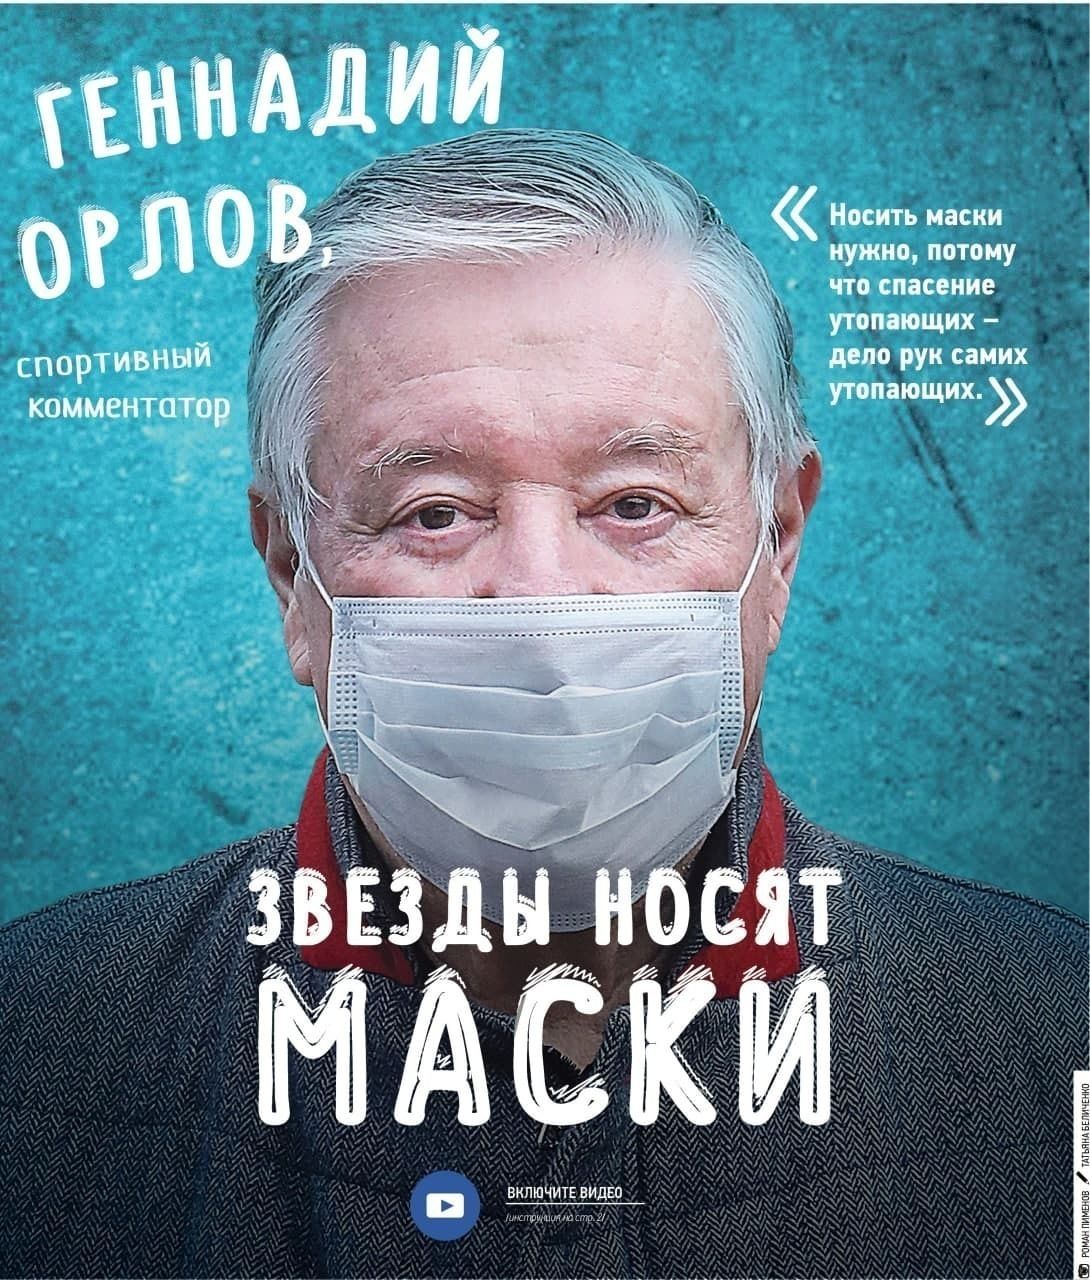 Геннадий Орлов про необходимость ношения масок: «Спасение утопающих – дело рук самих утопающих» 